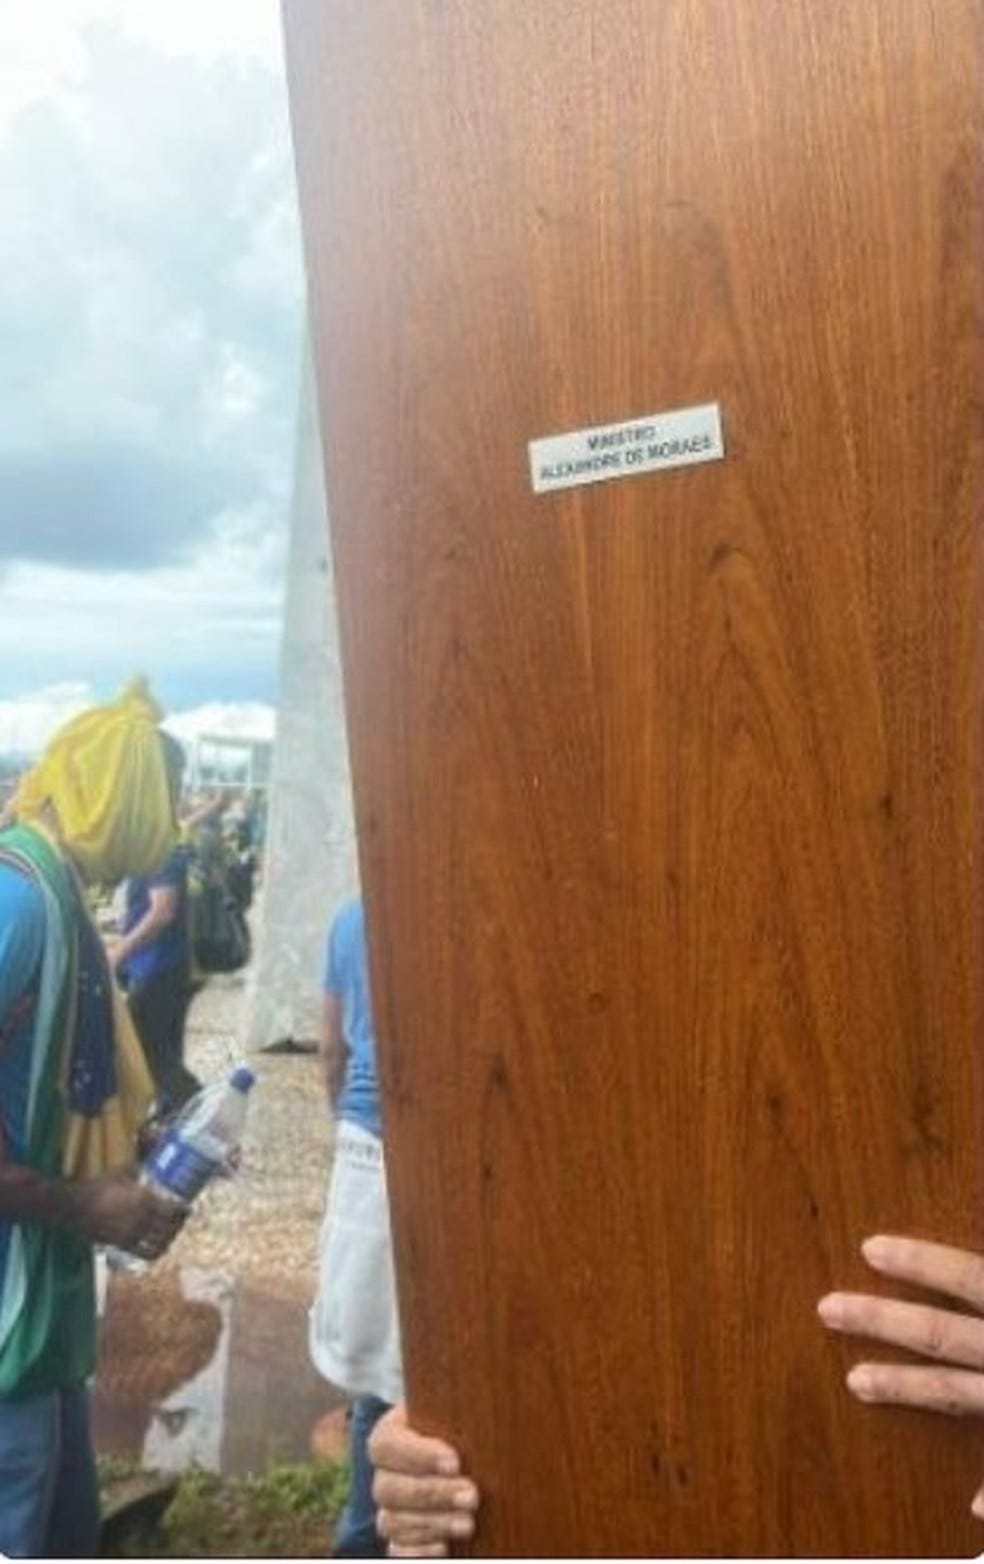 Bolsonarista radical arranca porta de armário com toga do ministro do STF  Alexandre de Moraes | Distrito Federal | G1